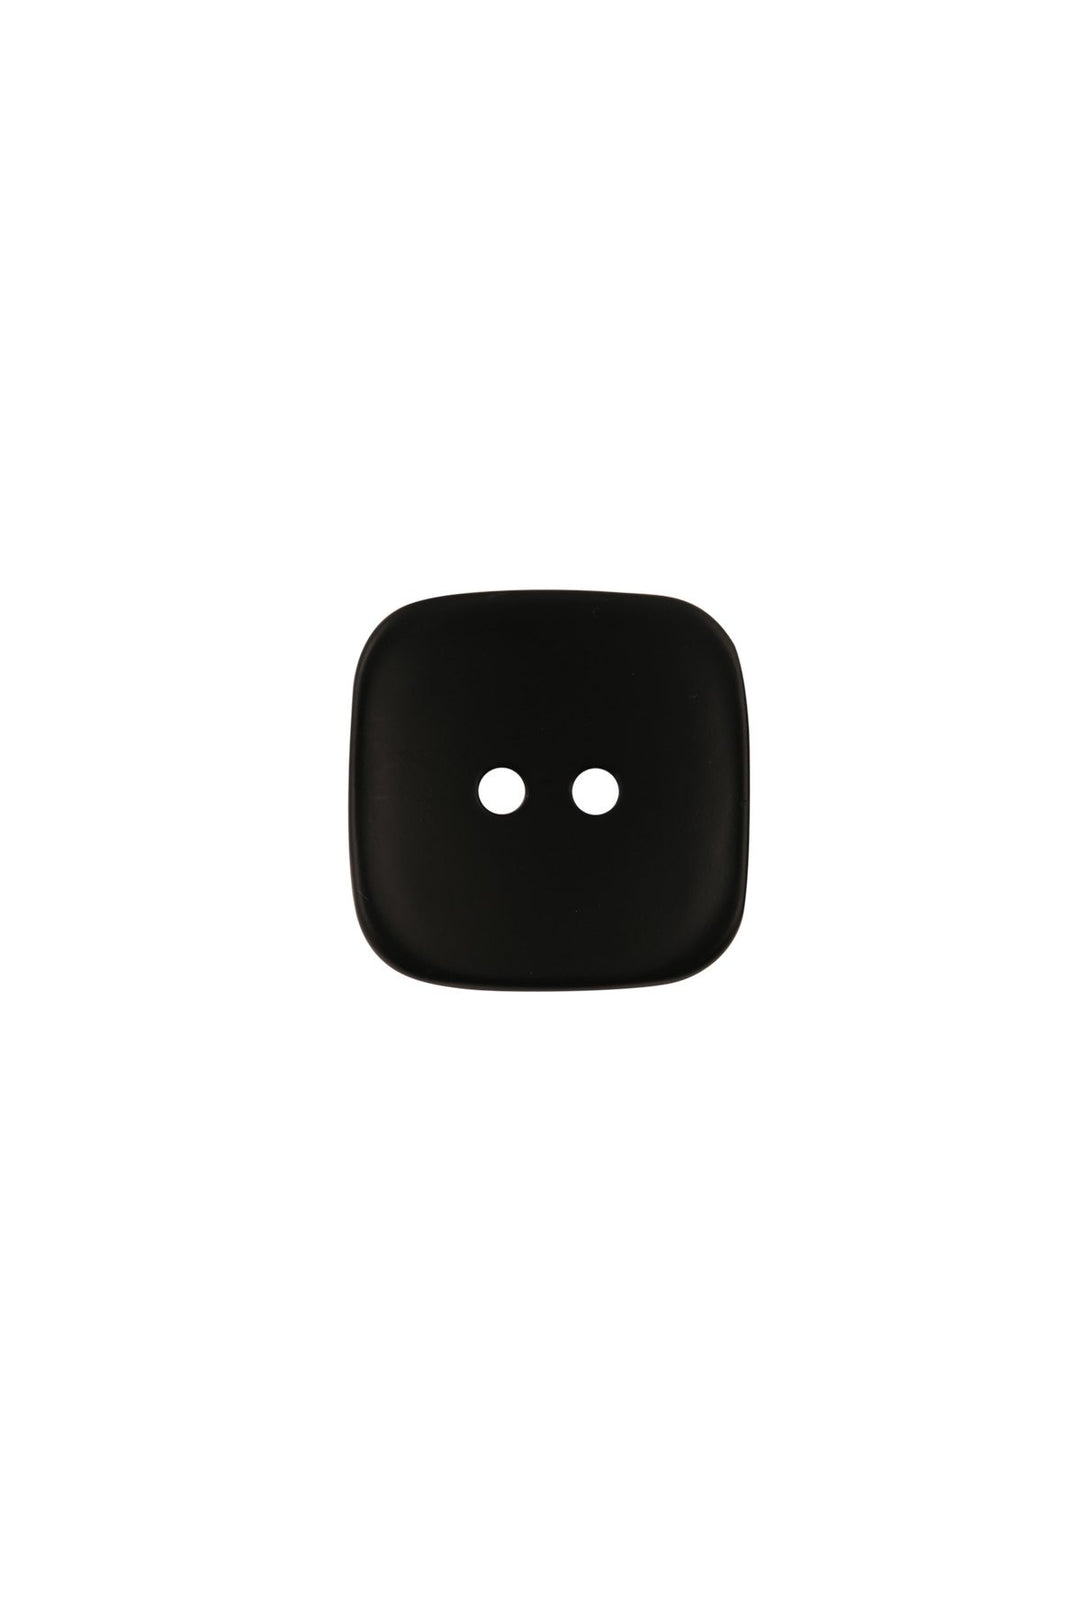 Big Square Shape Matte Black 2-Hole ABS Button